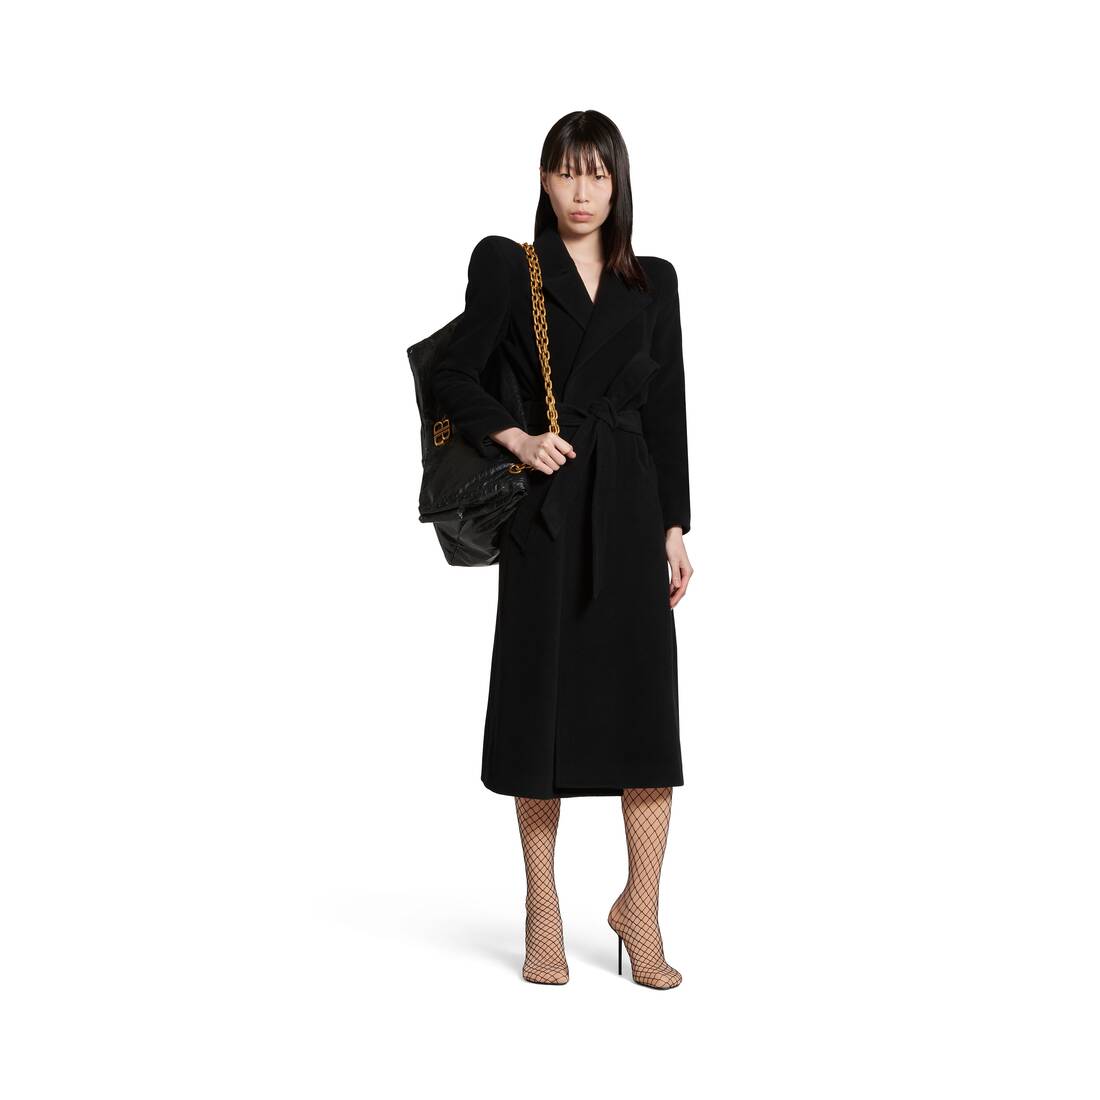 Monogram Mink Wrap Coat - Women - Ready-to-Wear